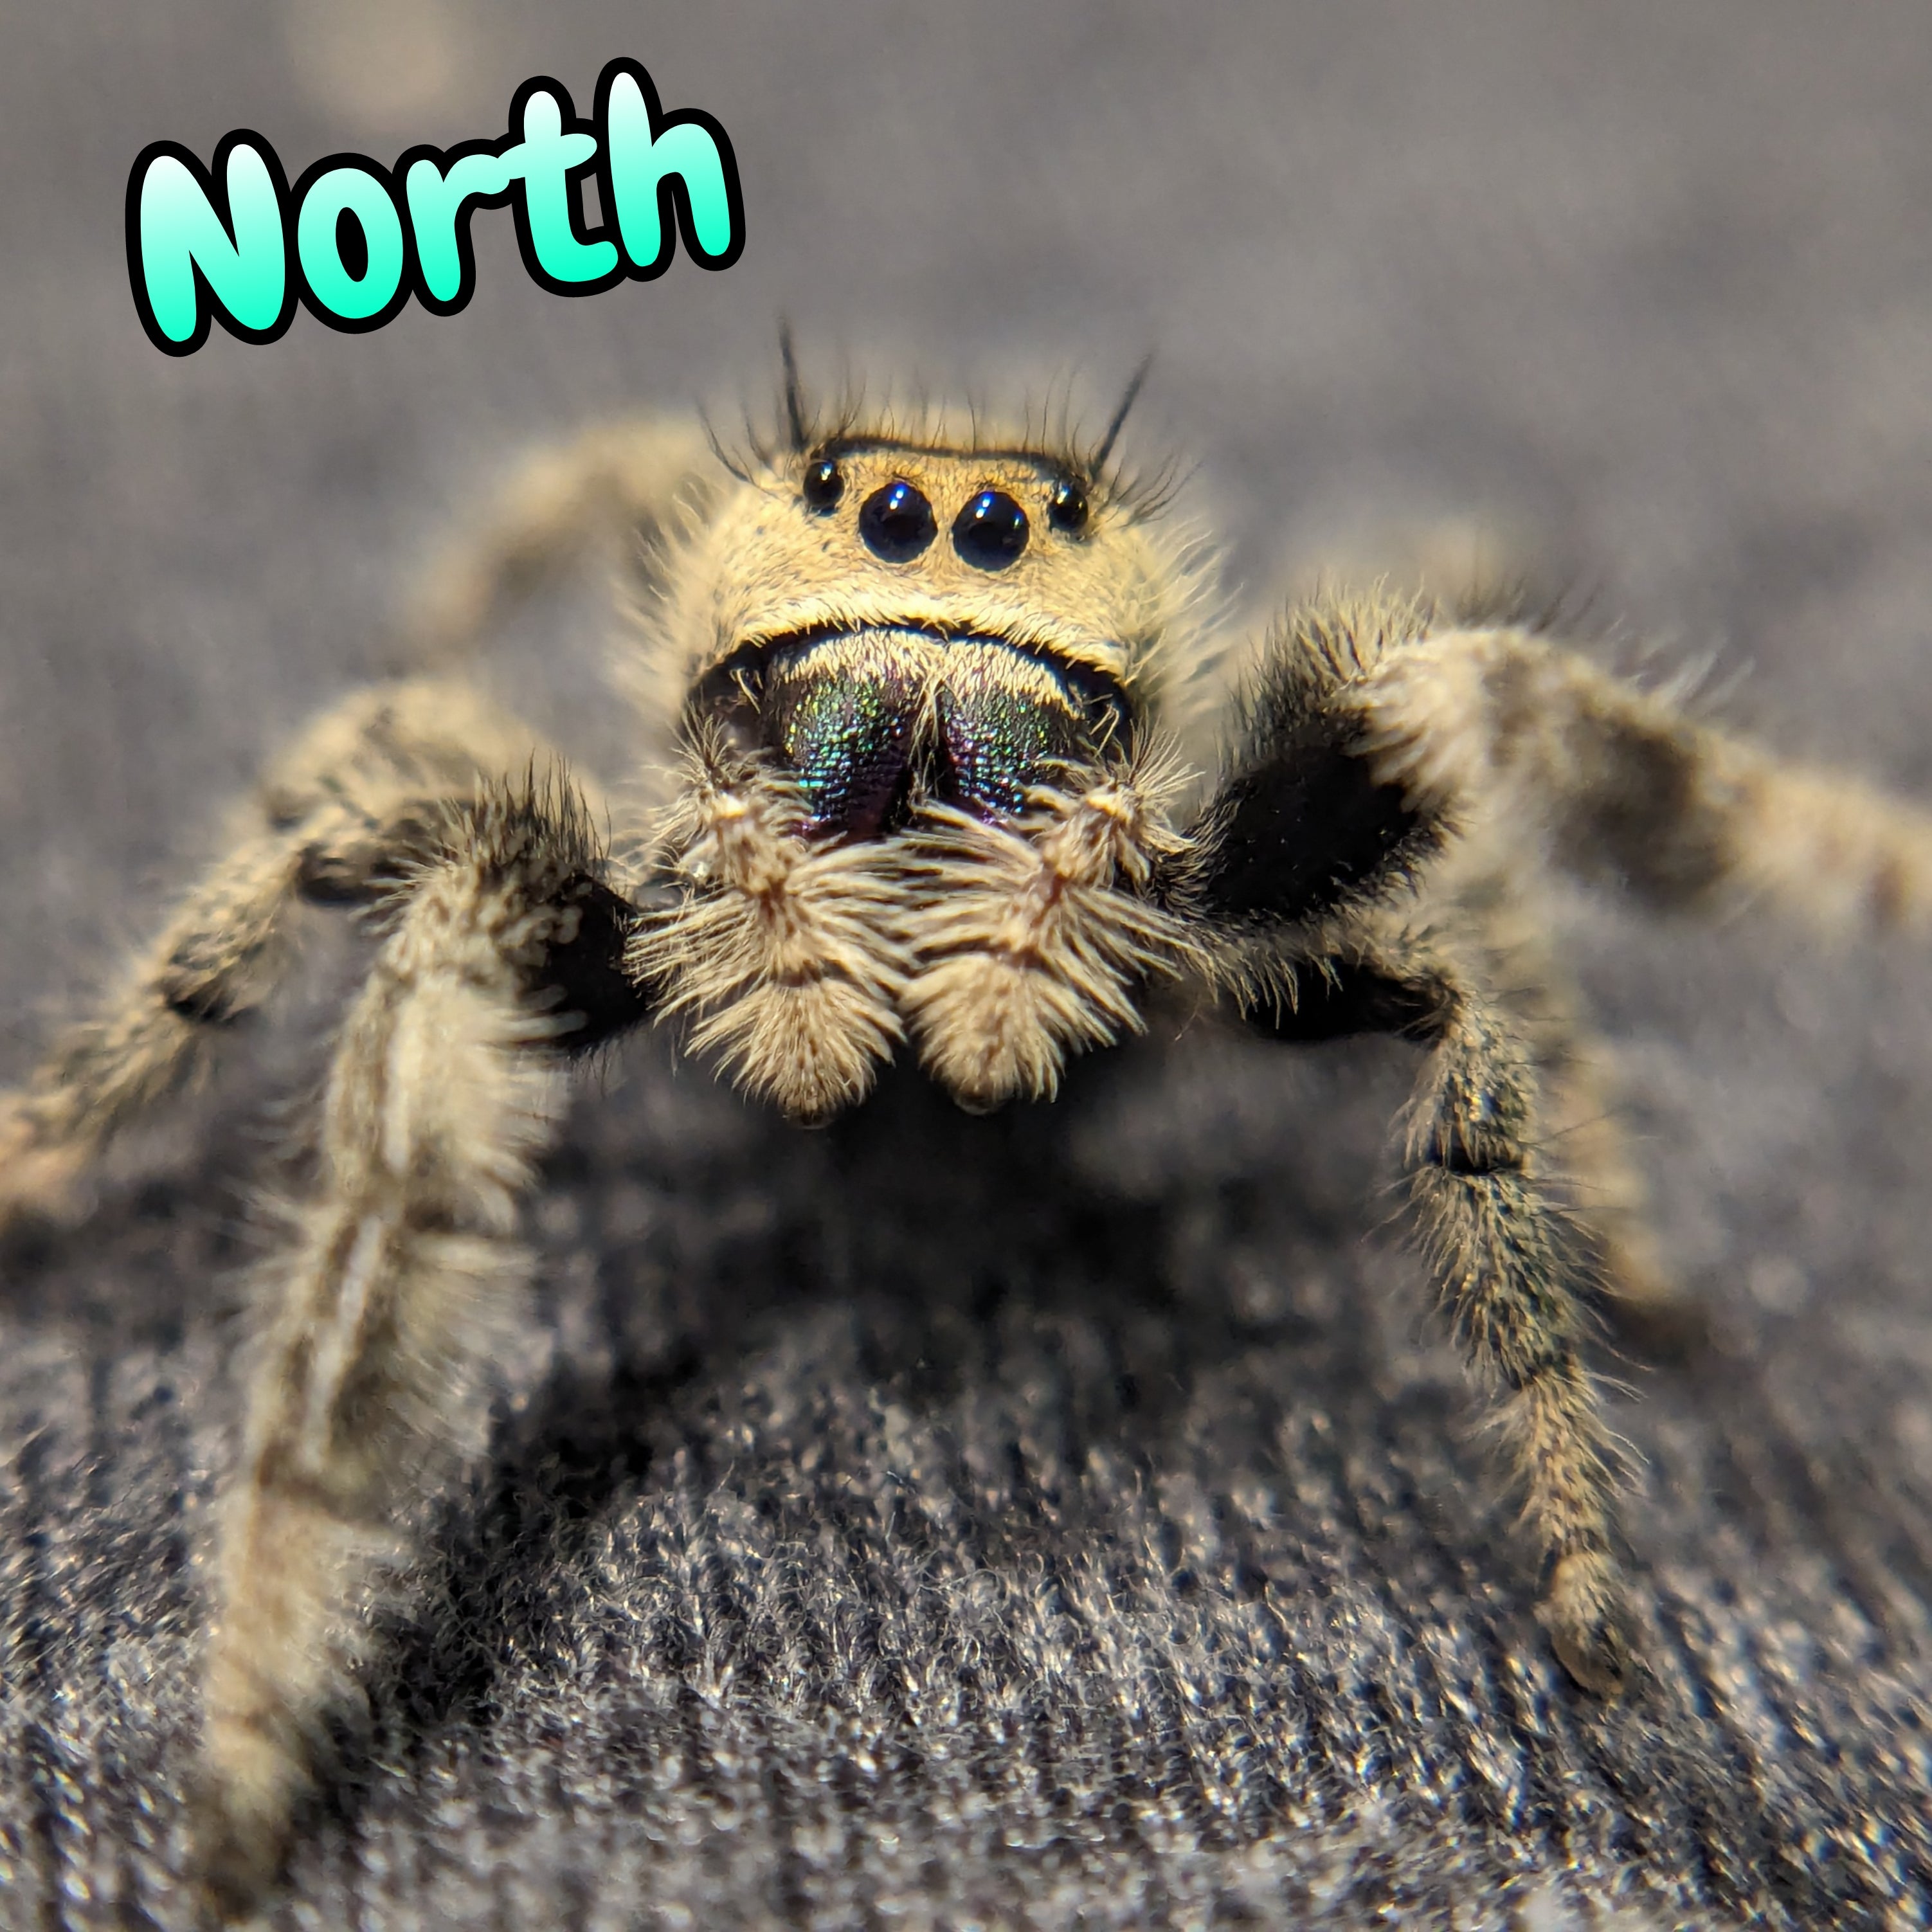 Regal Jumping Spider "North"